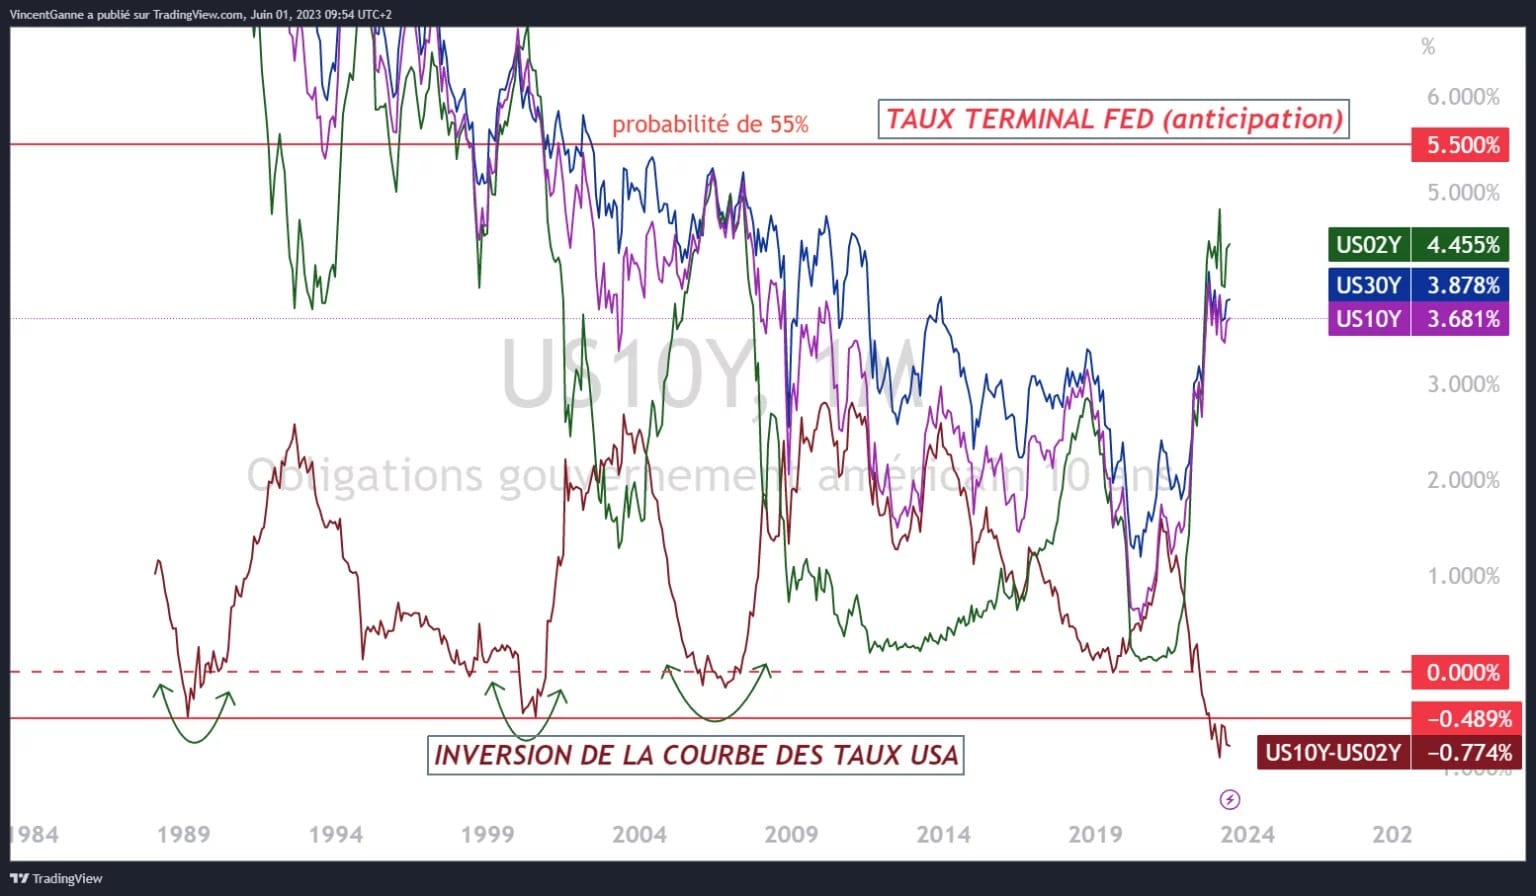 Grafico prodotto con il sito TradingView, che giustappone i rendimenti delle obbligazioni statunitensi a 2, 10 e 30 anni e il più probabile tasso terminale della Fed